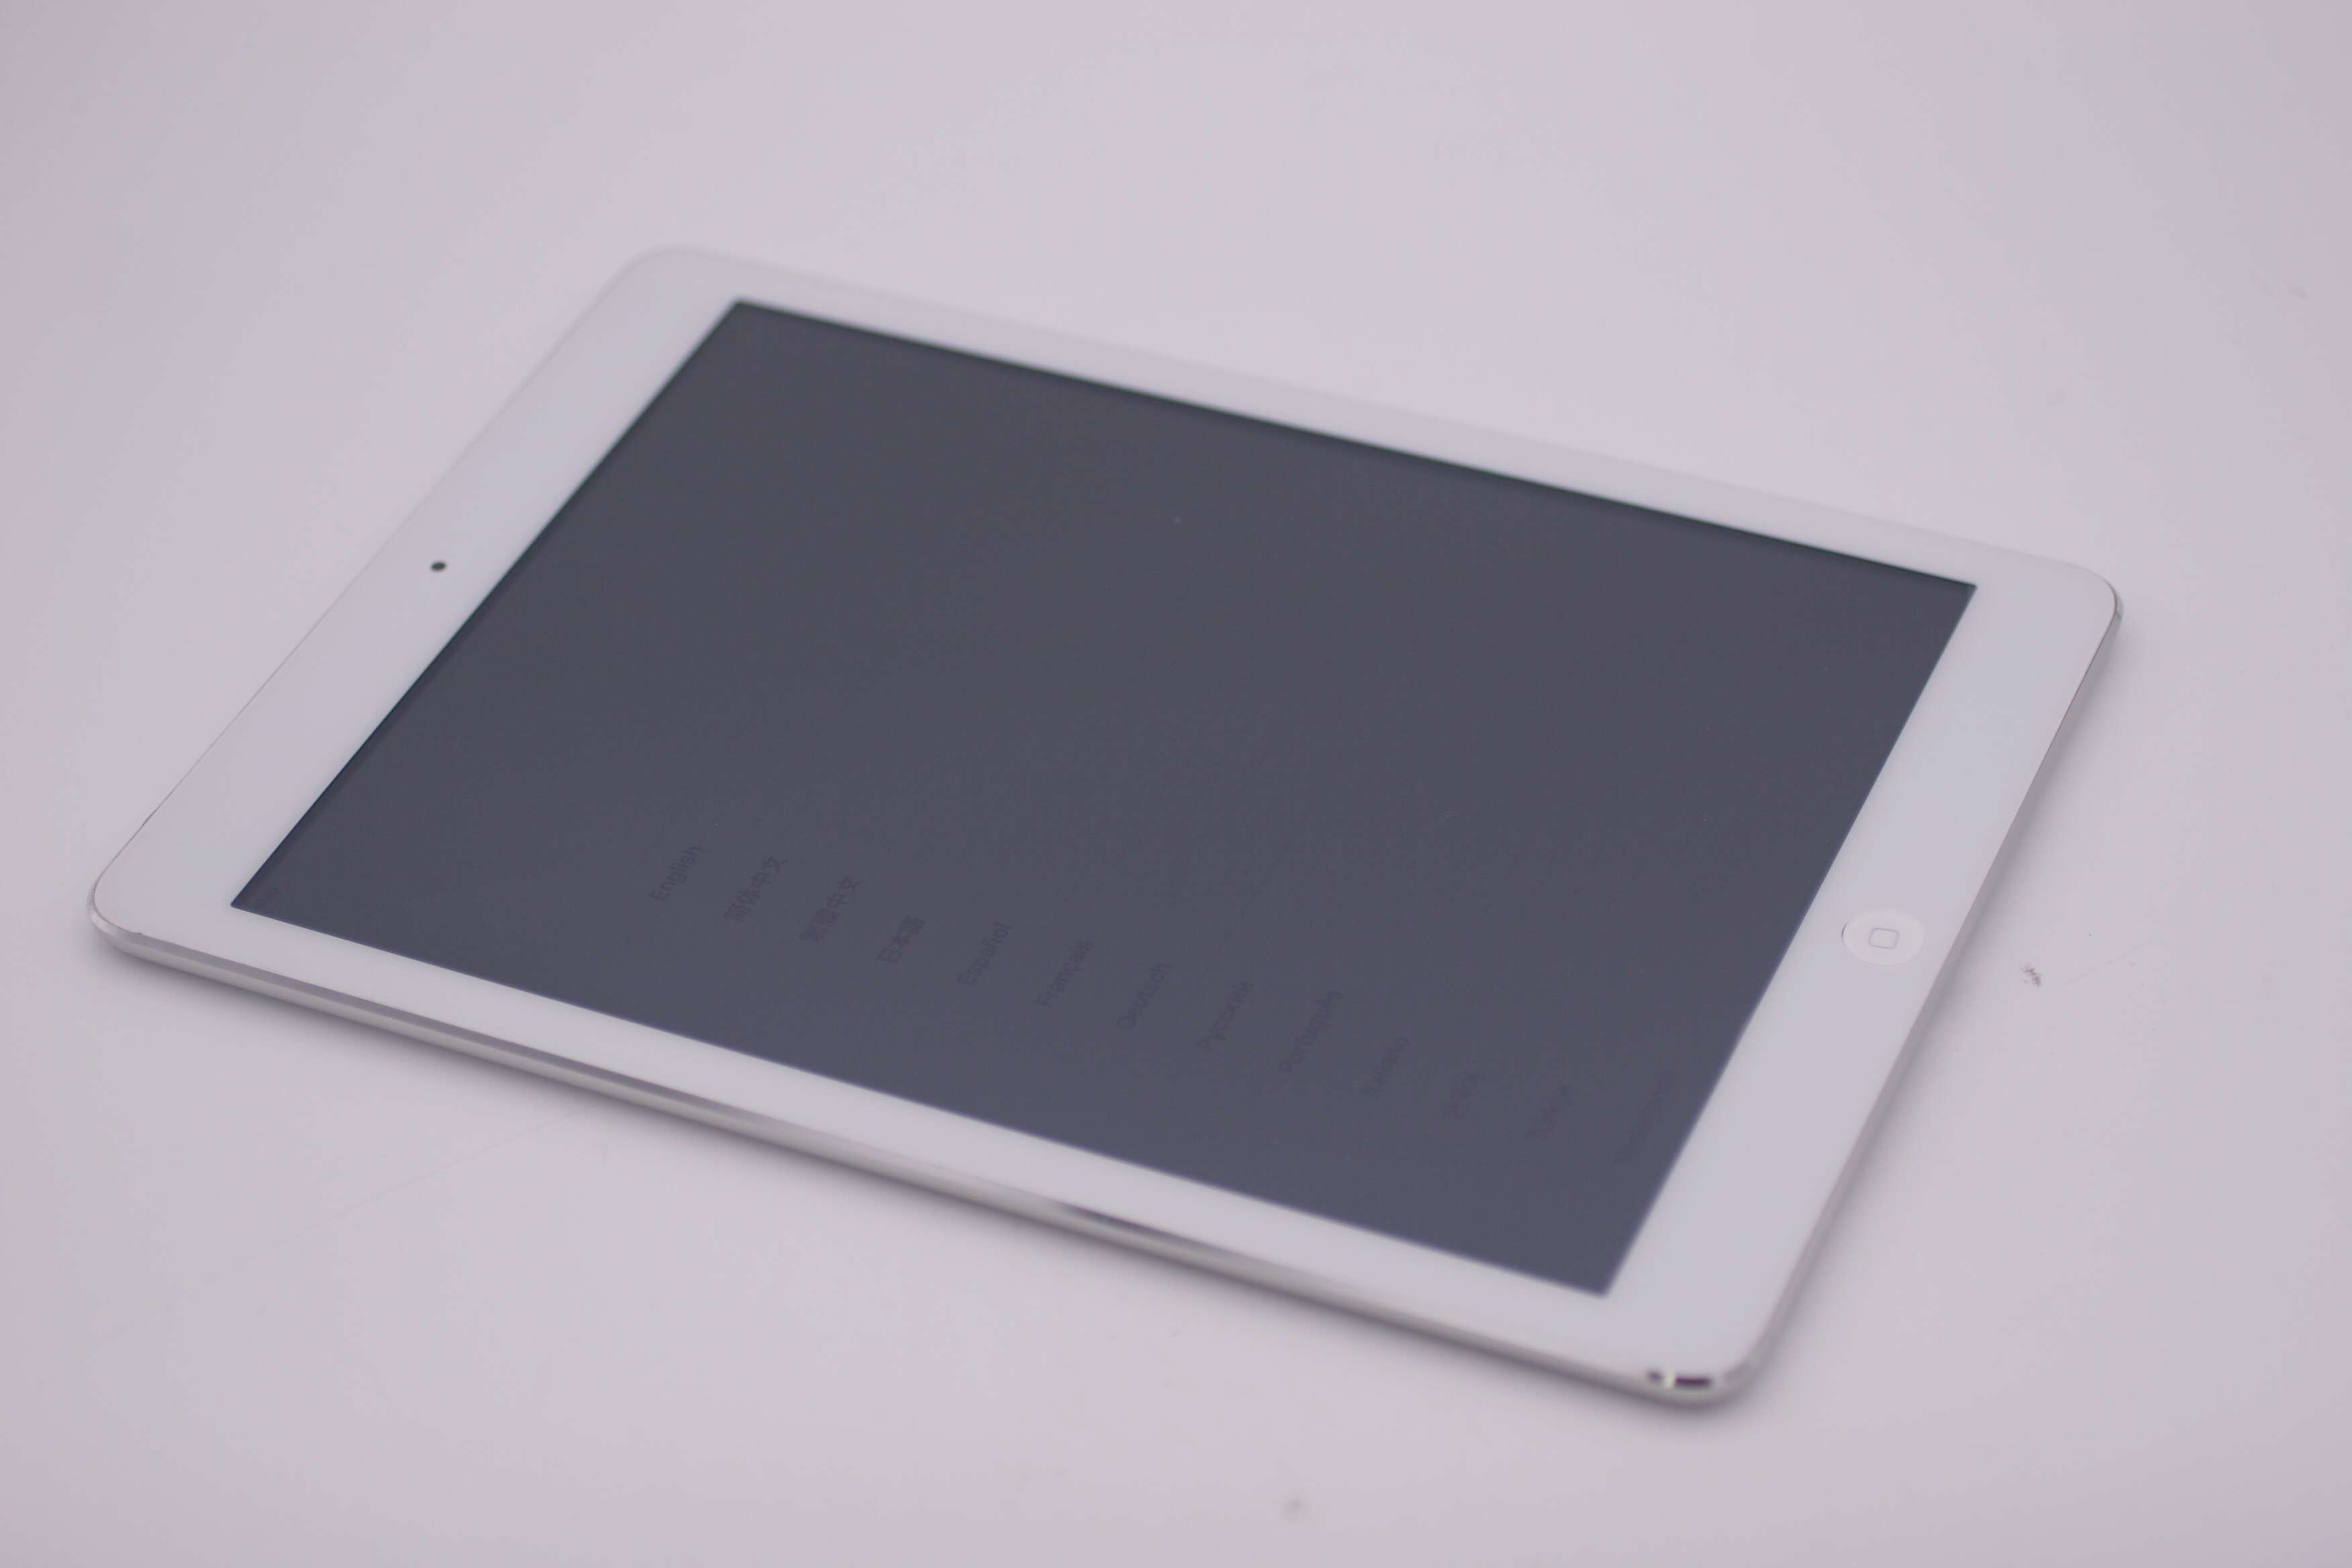 Apple iPad Air 1st Gen 9.7" 32GB MD789LL/A WiFi Silver IOS 10.3.3 | eBay